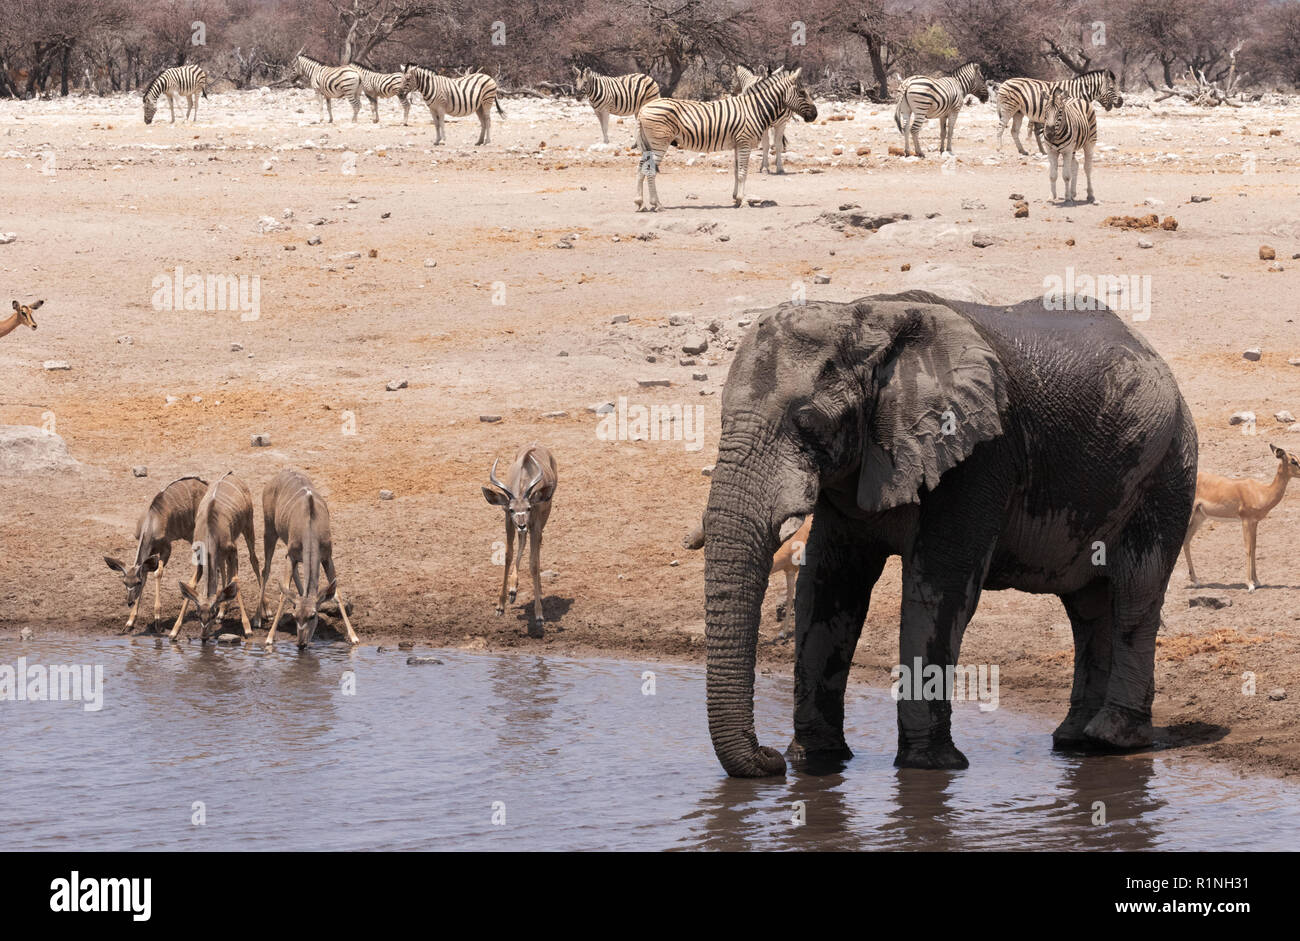 Afrika Wildlife, Afrika reisen; - Elefanten, Kudus Zebras und Impalas - Vielfalt der wilden Tiere an einem Wasserloch, Etosha National Park, Namibia, Afrika - Stockfoto